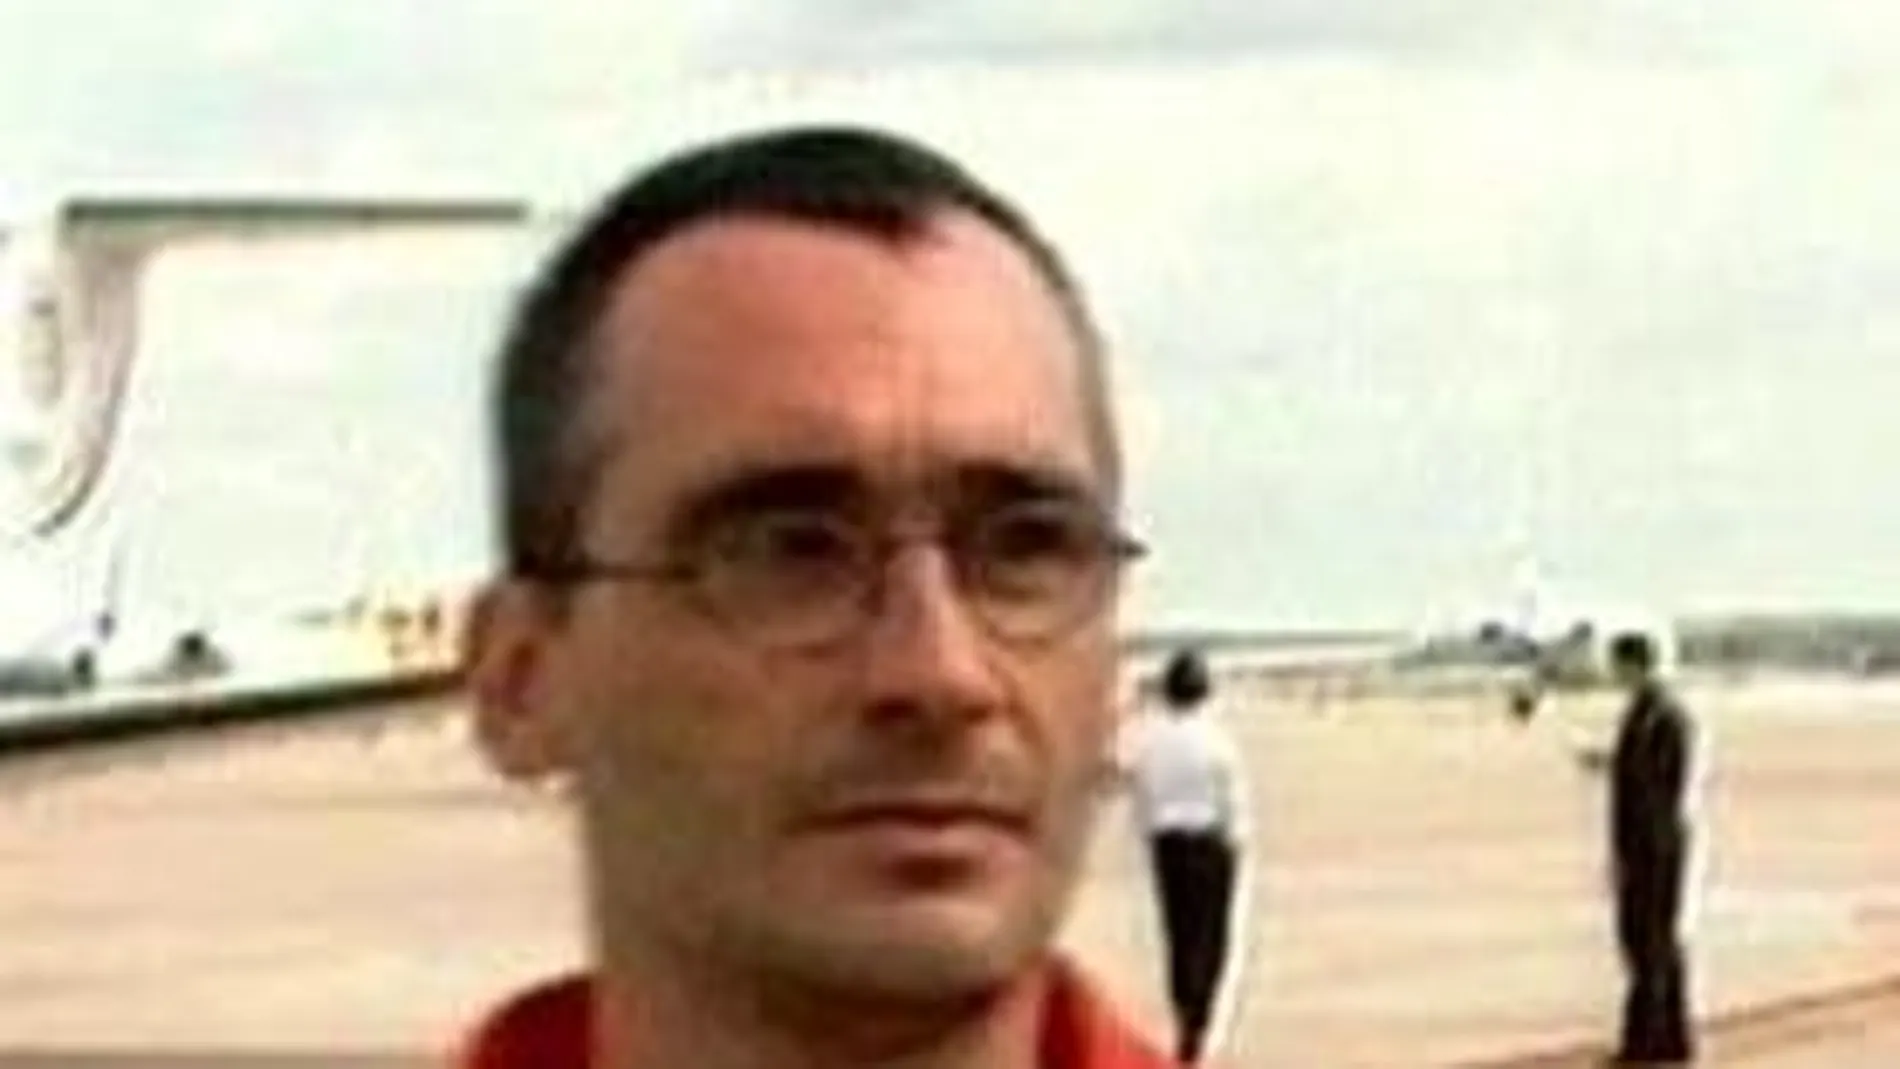 Agentes de la Policía española trasladaron hoy desde Francia al presunto miembro de la organización terrorista ETA Xavier Echevarría Jáuregui, detenido en el año 2003 en la localidad francesa de Bourges